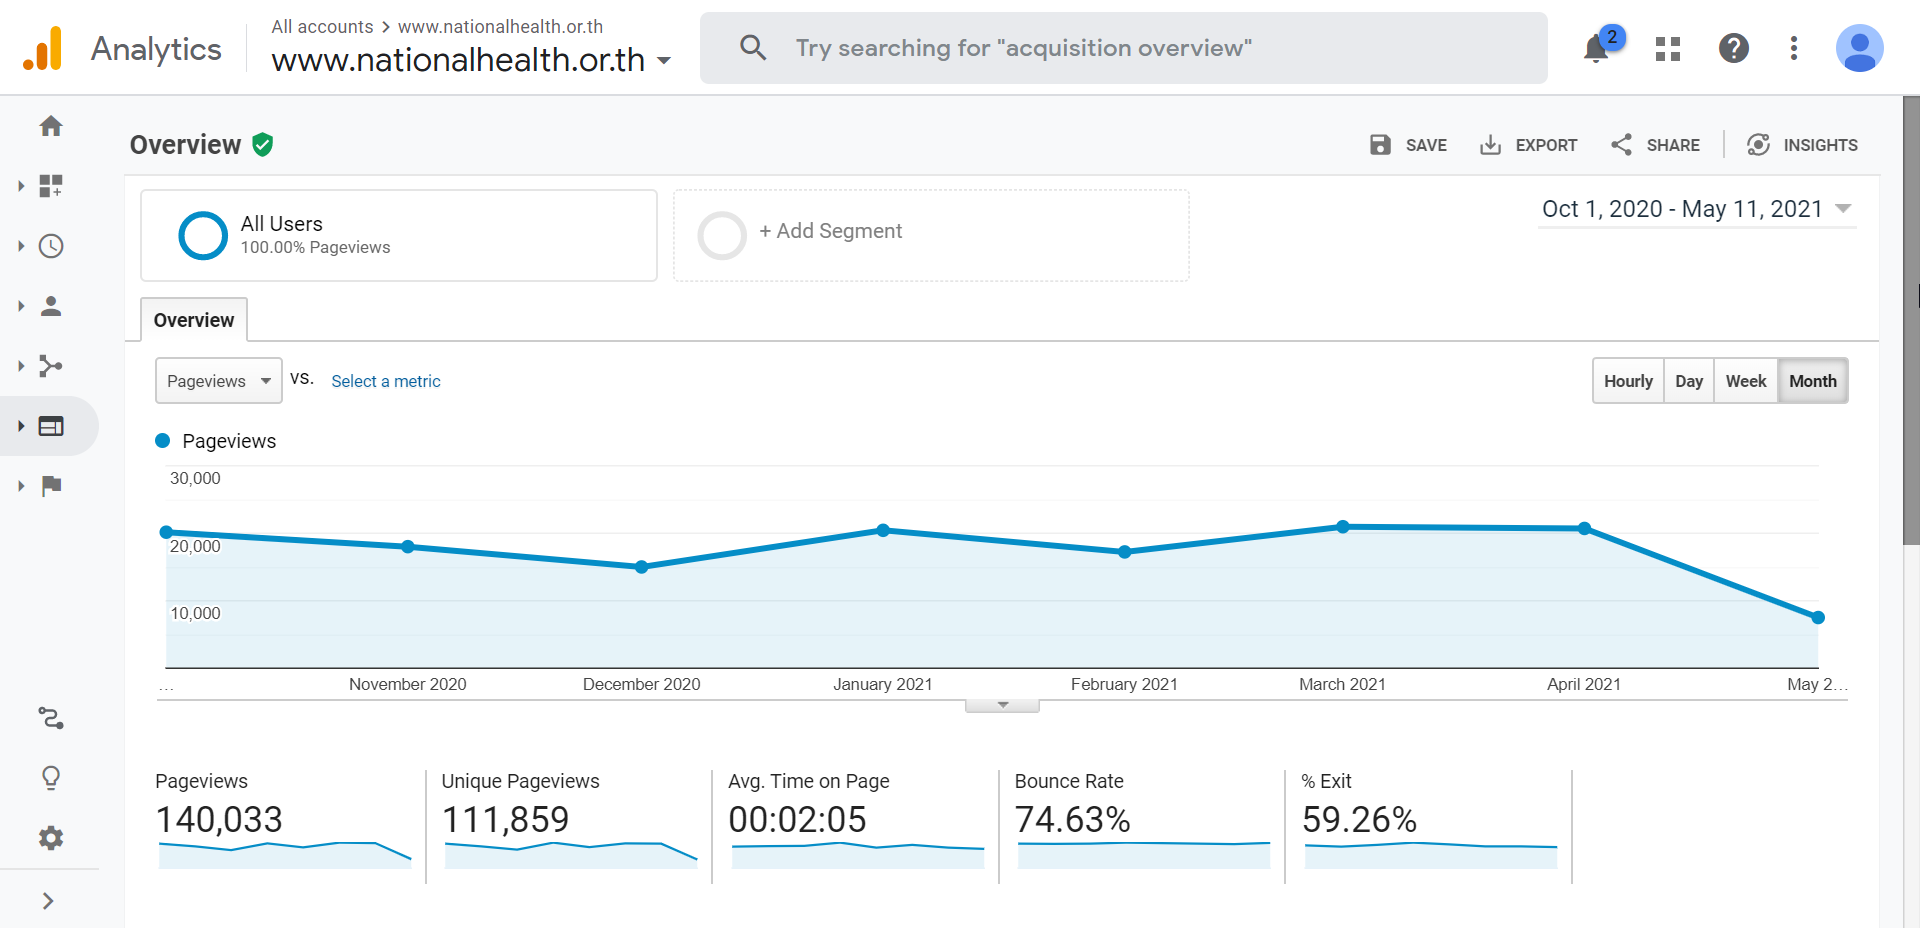 สถิติการเข้าชมเว็บไซต์สำนักงานคณะกรรมการสุขภาพแห่งชาติ (ภาษาไทย) รอบ 6 เดือน